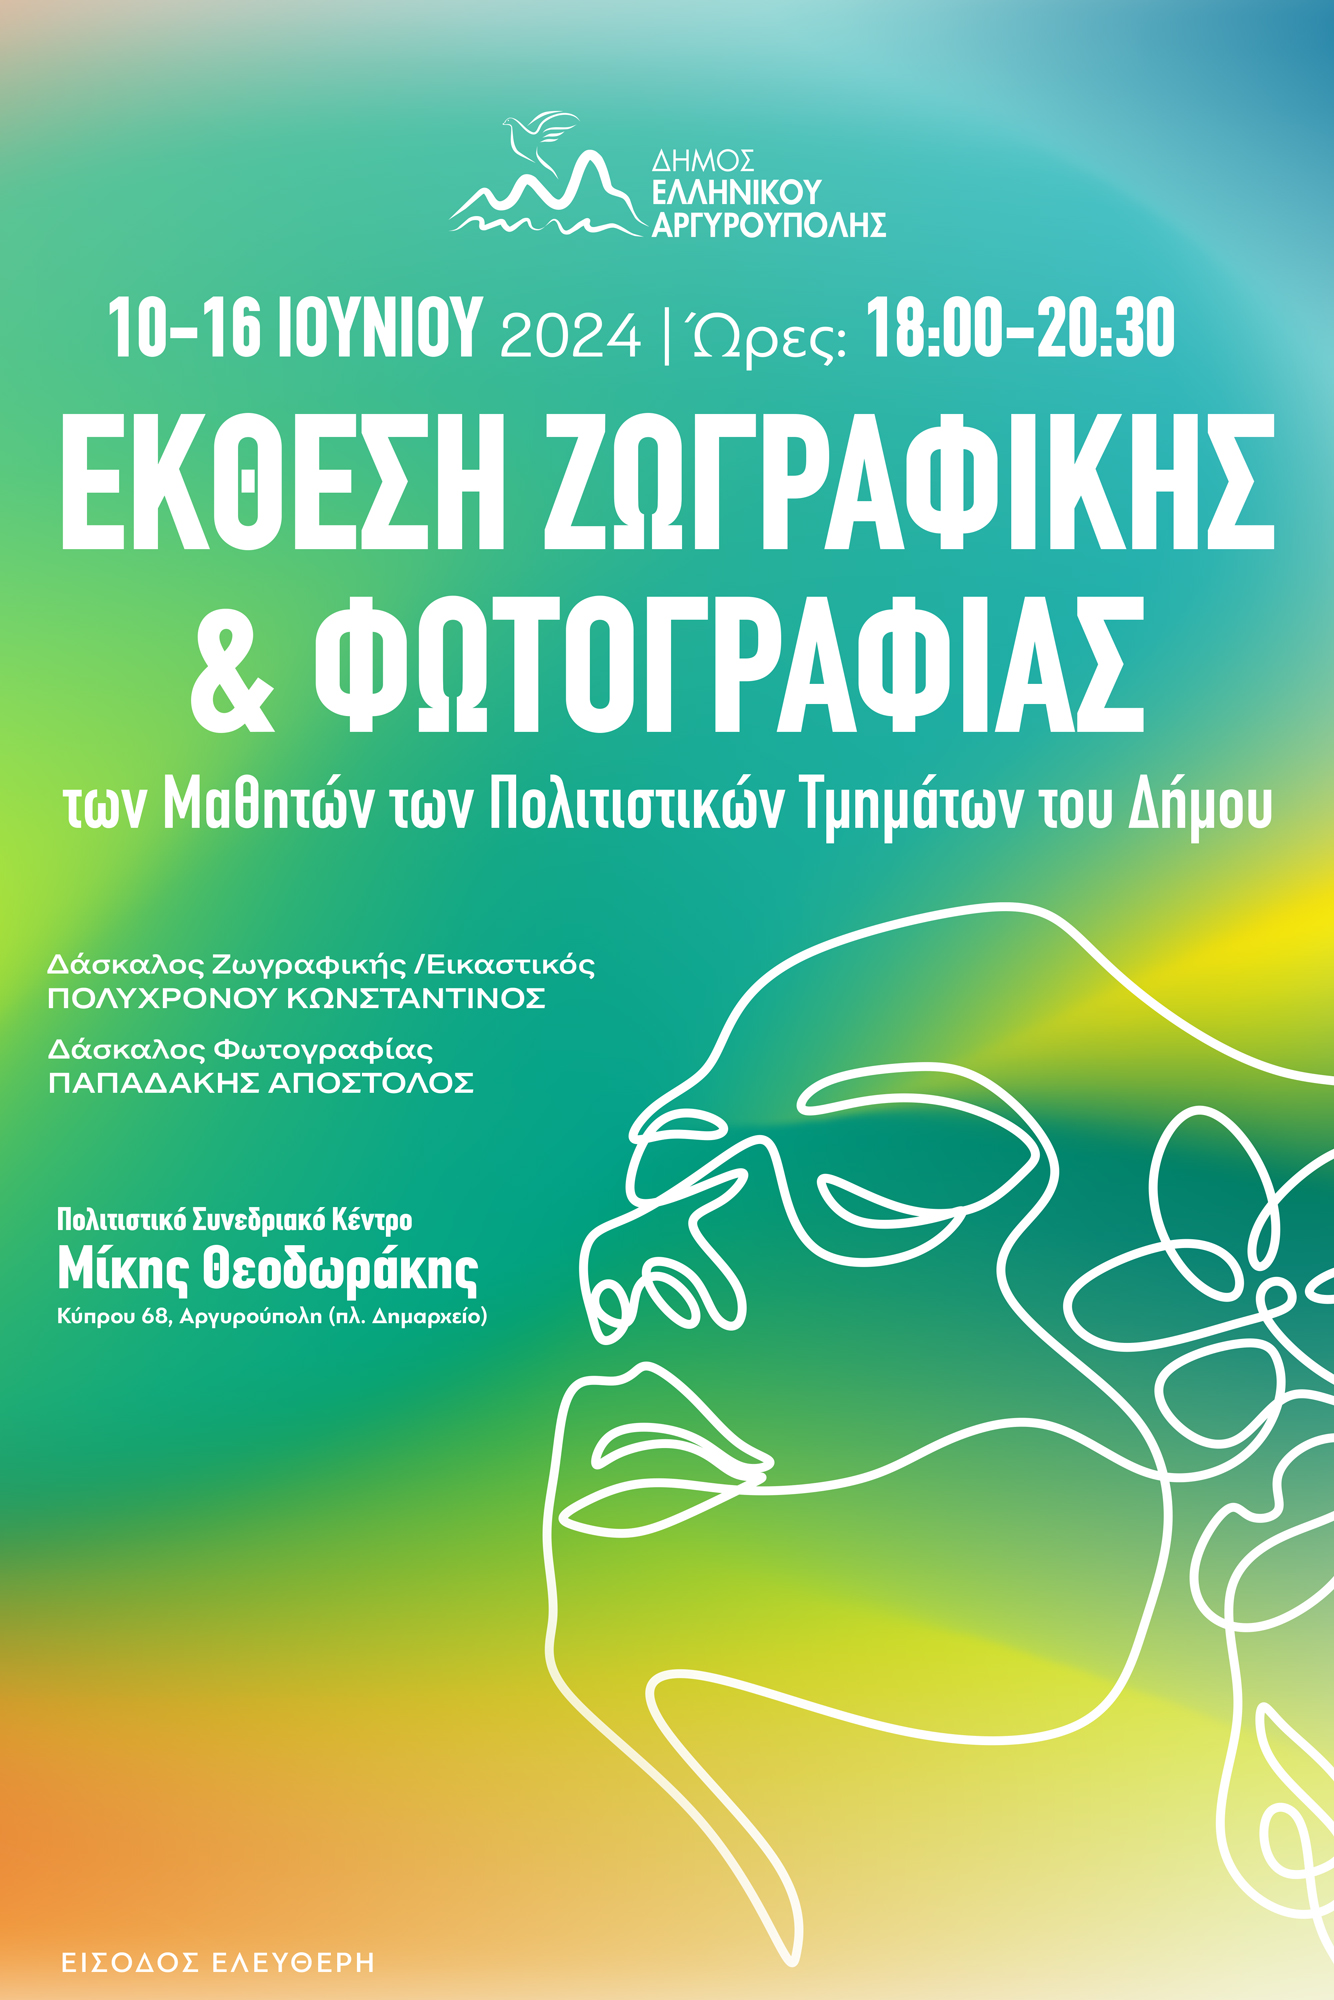 Poster Ekthesi Zografikis Photo